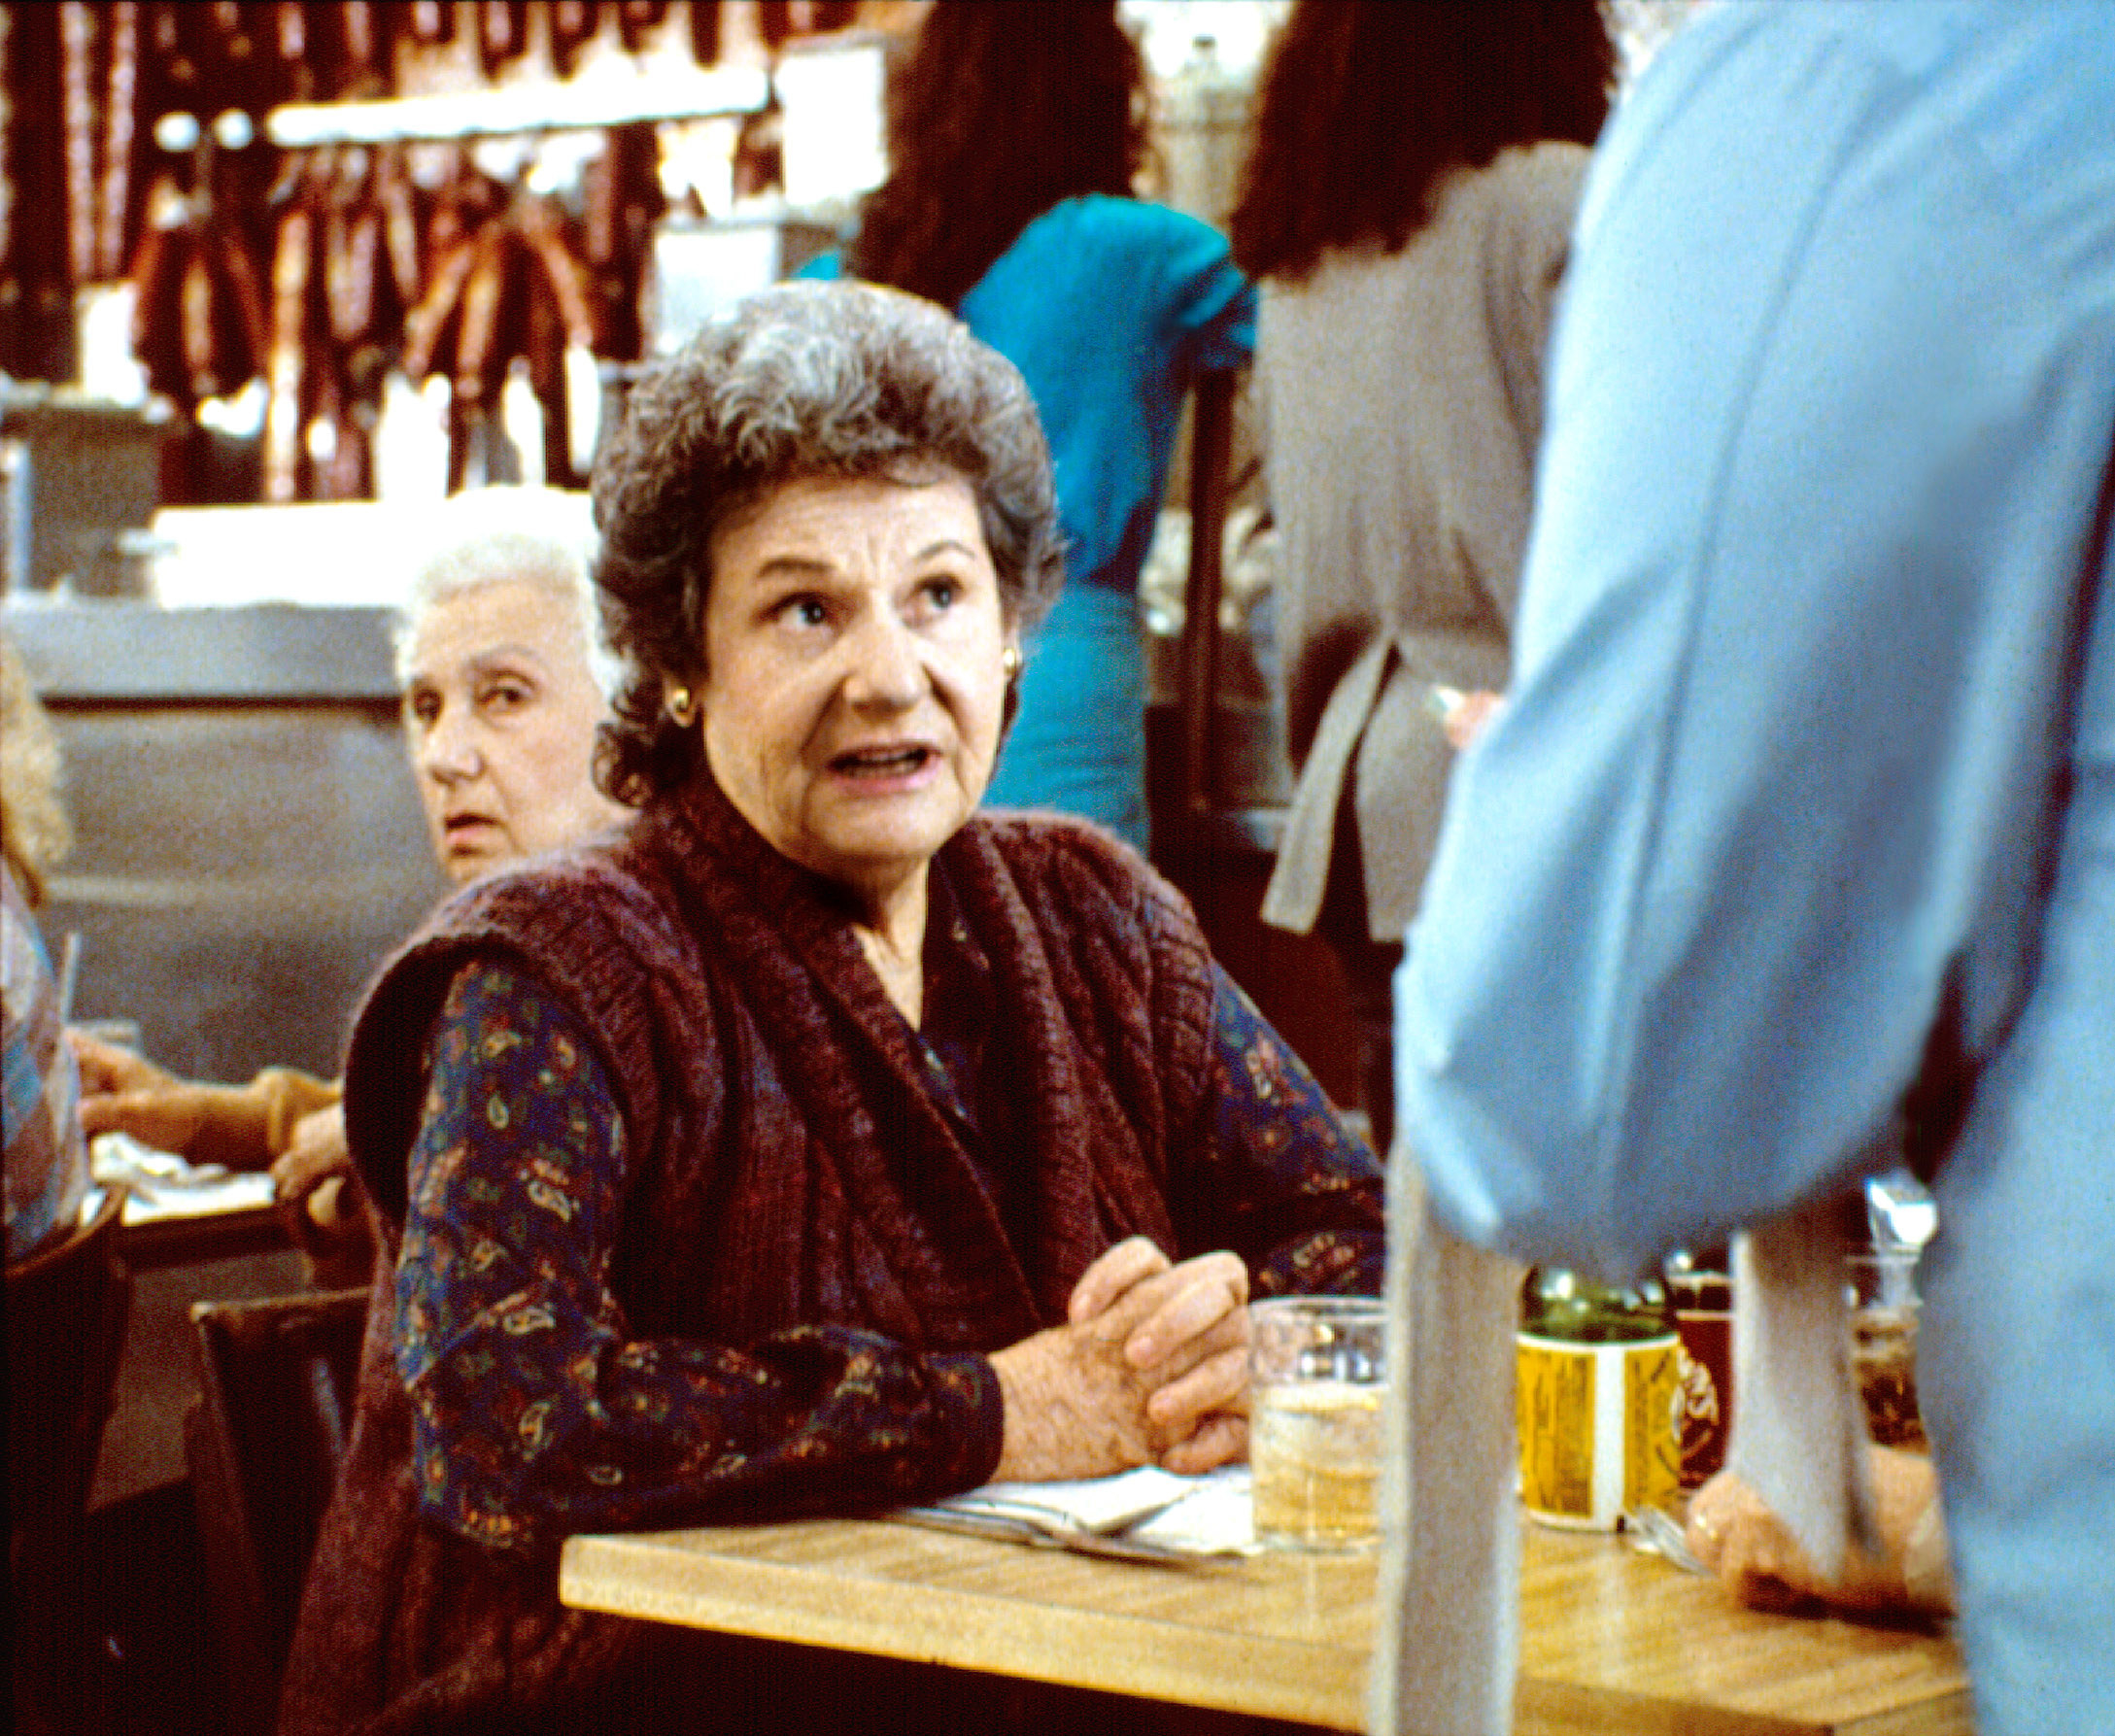 Estelle Reiner in the diner